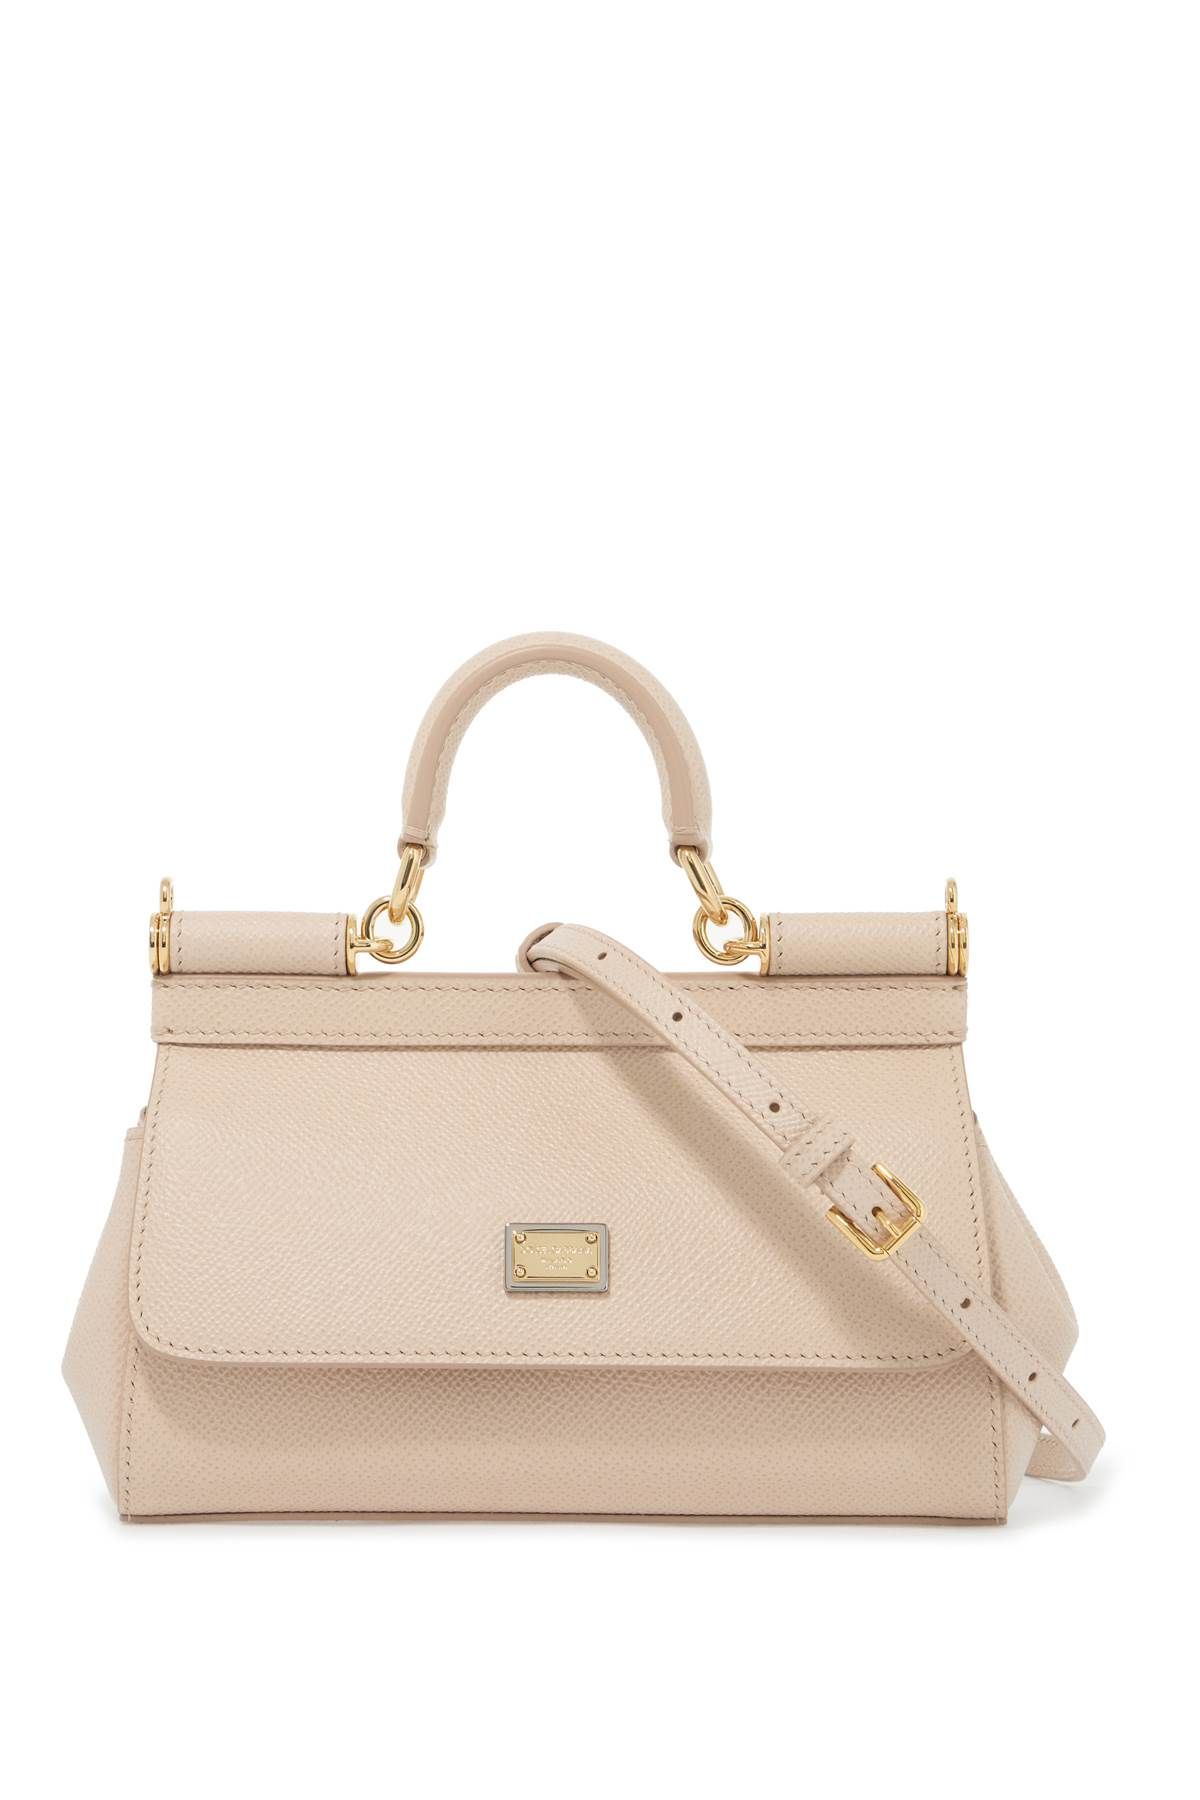 Dolce & Gabbana DOLCE & GABBANA sicily small handbag